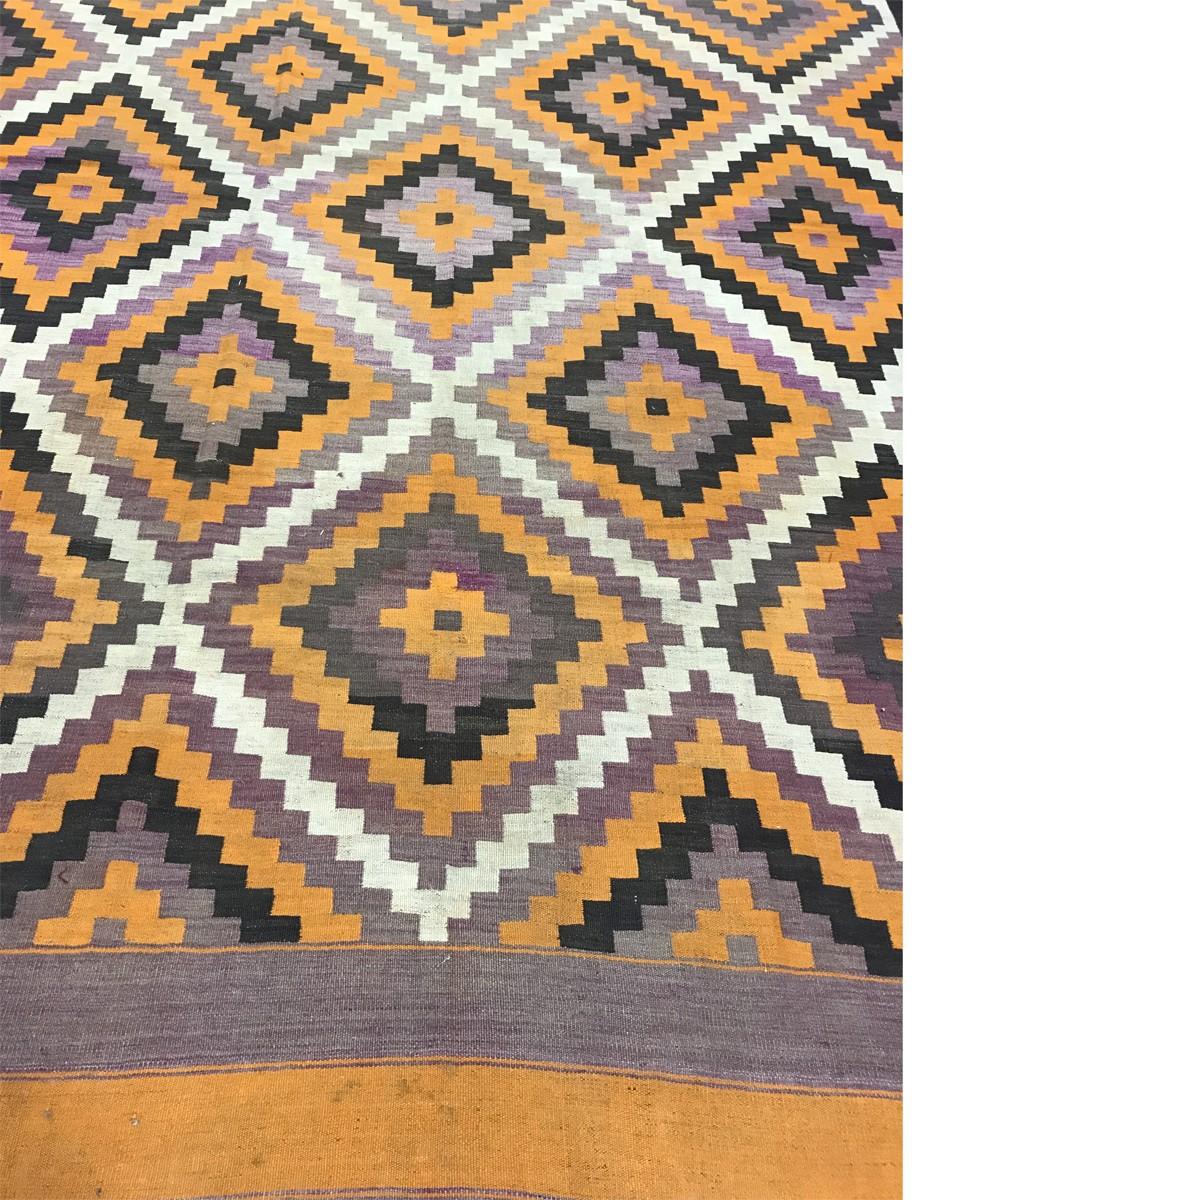 Einzigartige alte und antike Ghelims-Teppiche aus Afghanistan, der Türkei, Iran, Ost- und Zentralasien. Diese historischen Teppiche, die zwischen 1890 und 1950 gewebt wurden, haben neben ihren Übergangs- und Stammesmustern auch eine zeitgenössische